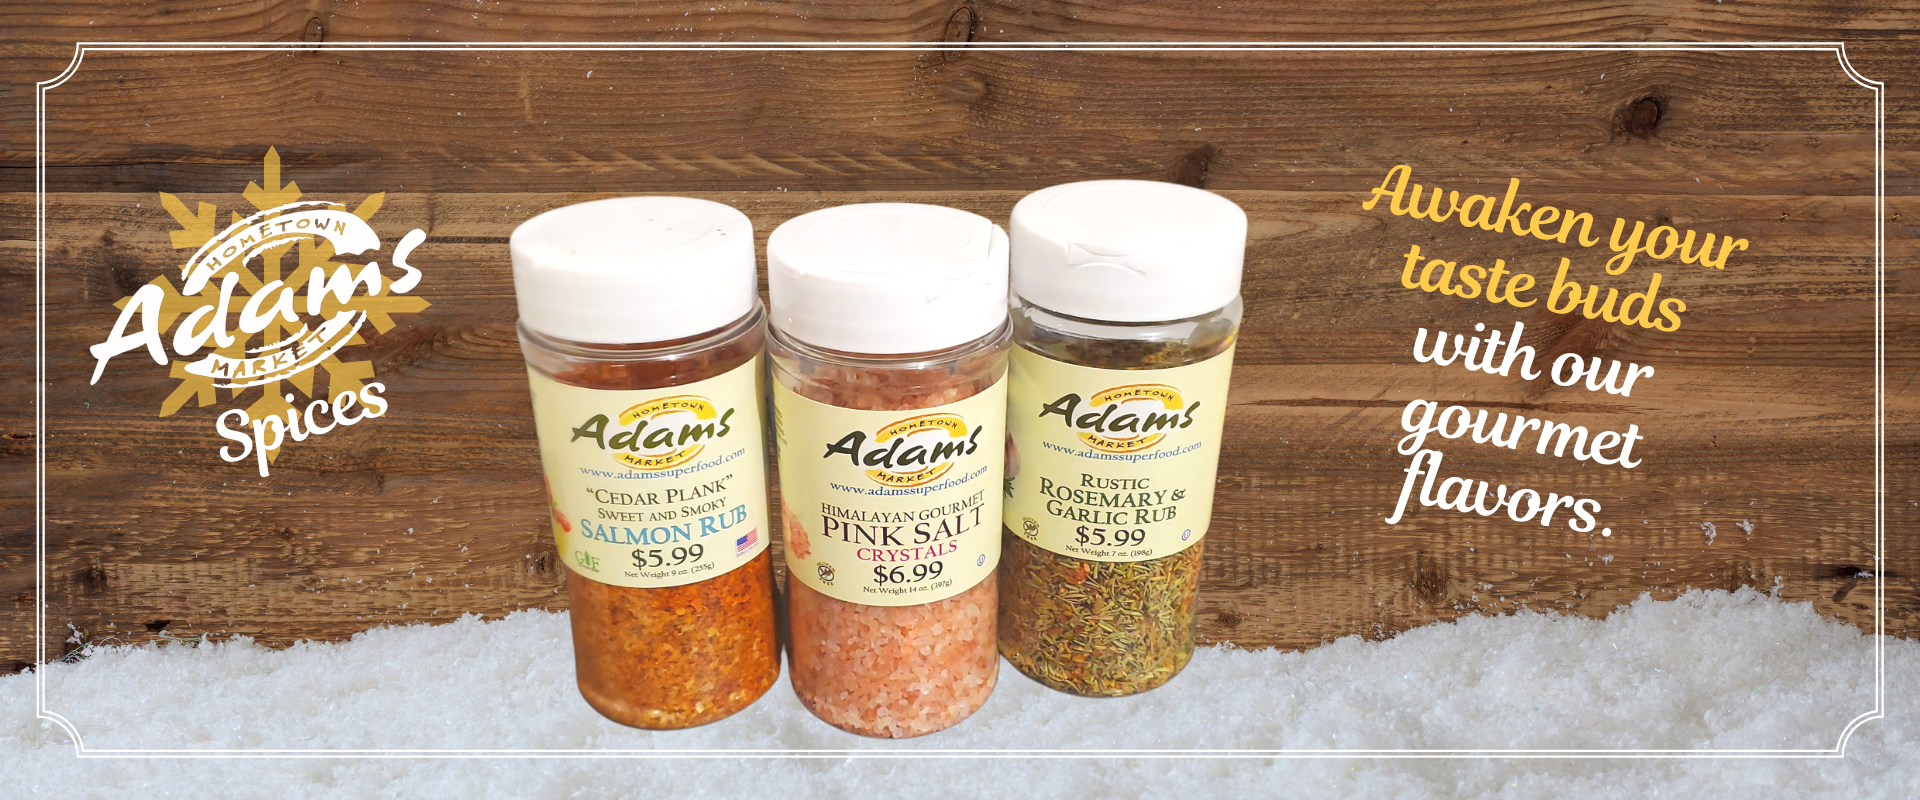 Adam's Spices